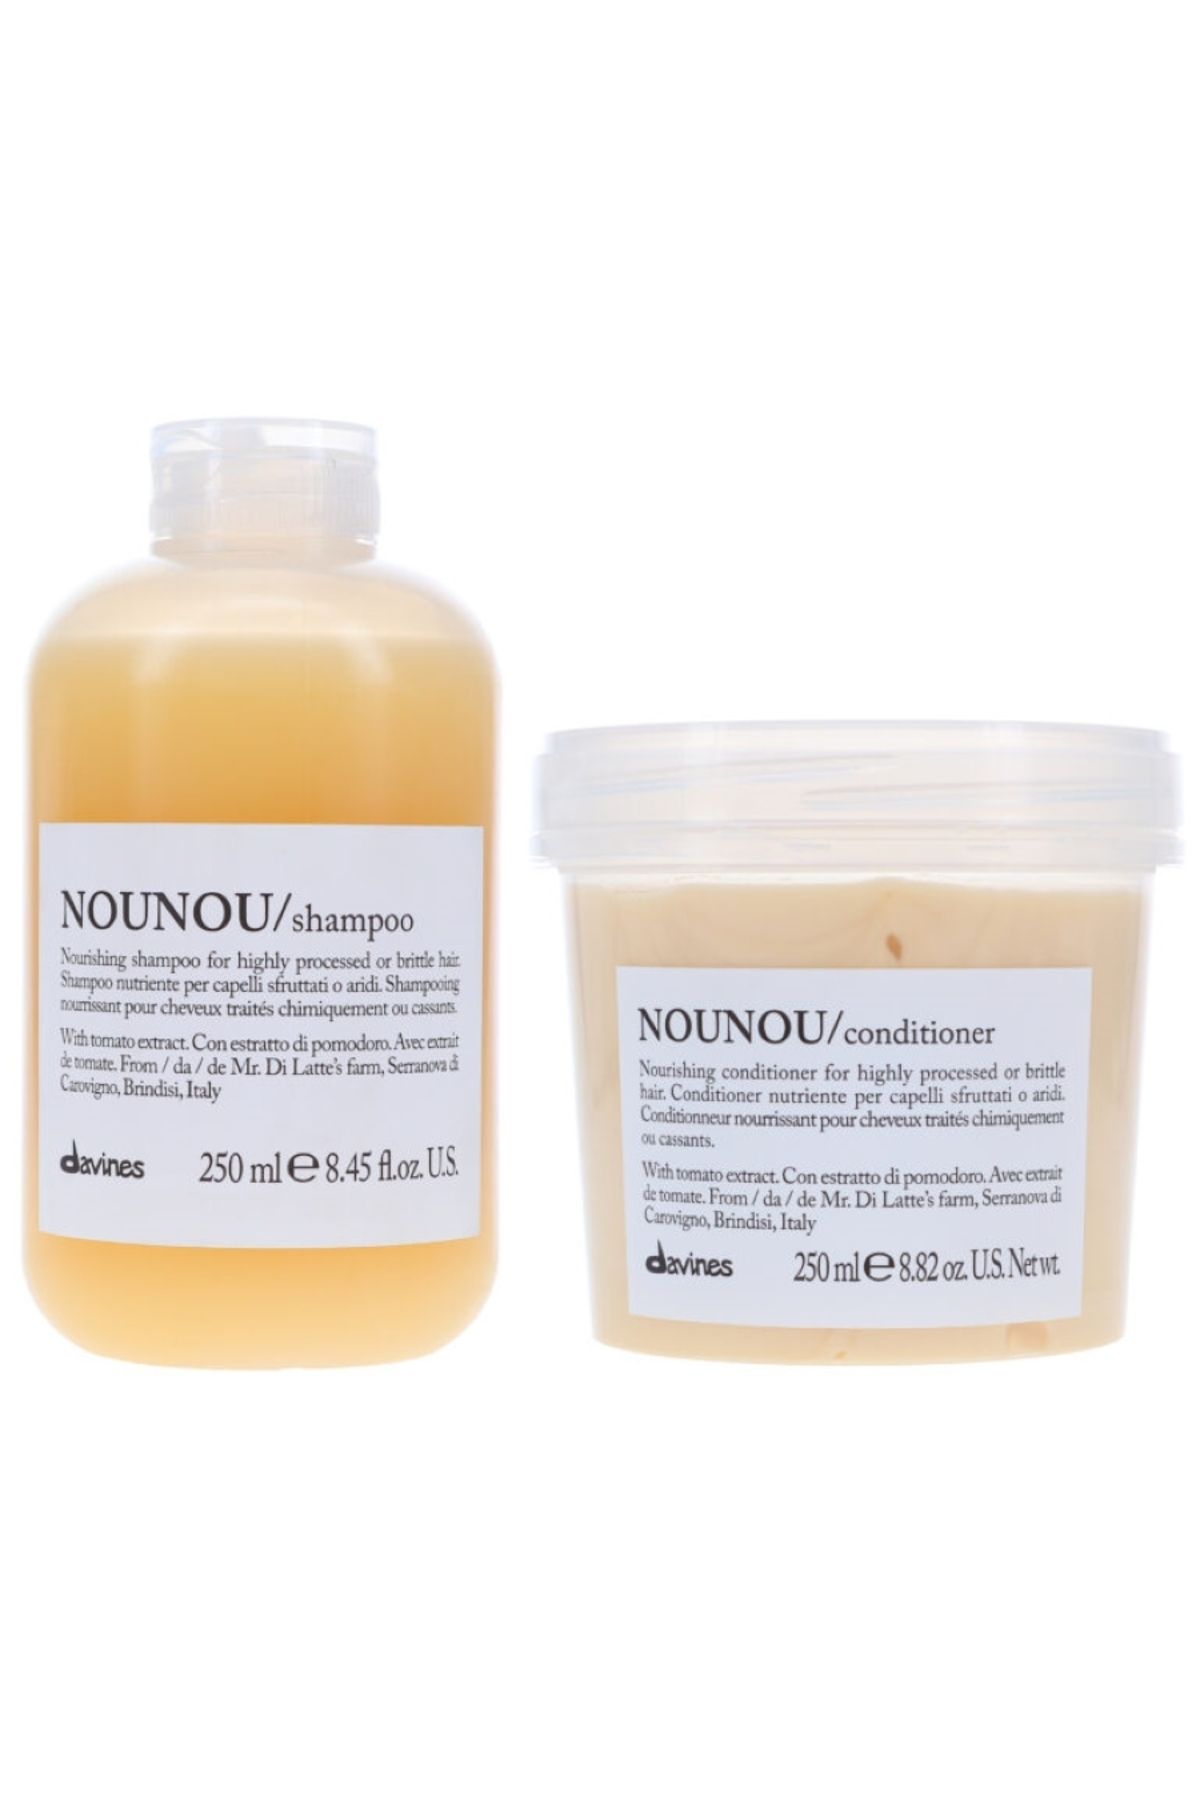 Davines Nounou Shampoo-İşlem Görmüş Saçlar İçin Besleyici ve Onarıcı Şampuan-Saç KremiCYT79464622260